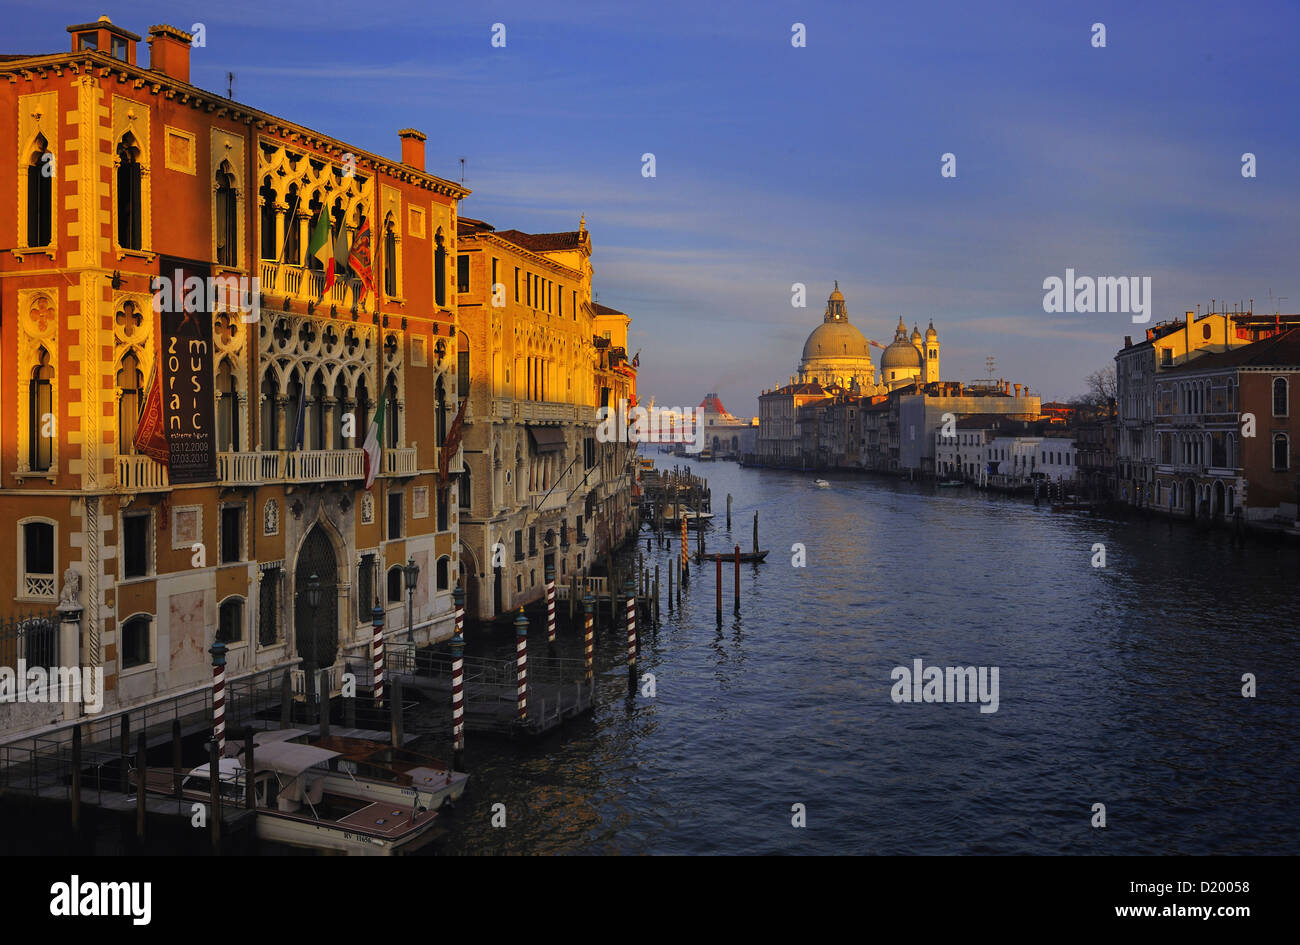 Canal Grande, Santa Maria della Salute, Venice, Italy Stock Photo